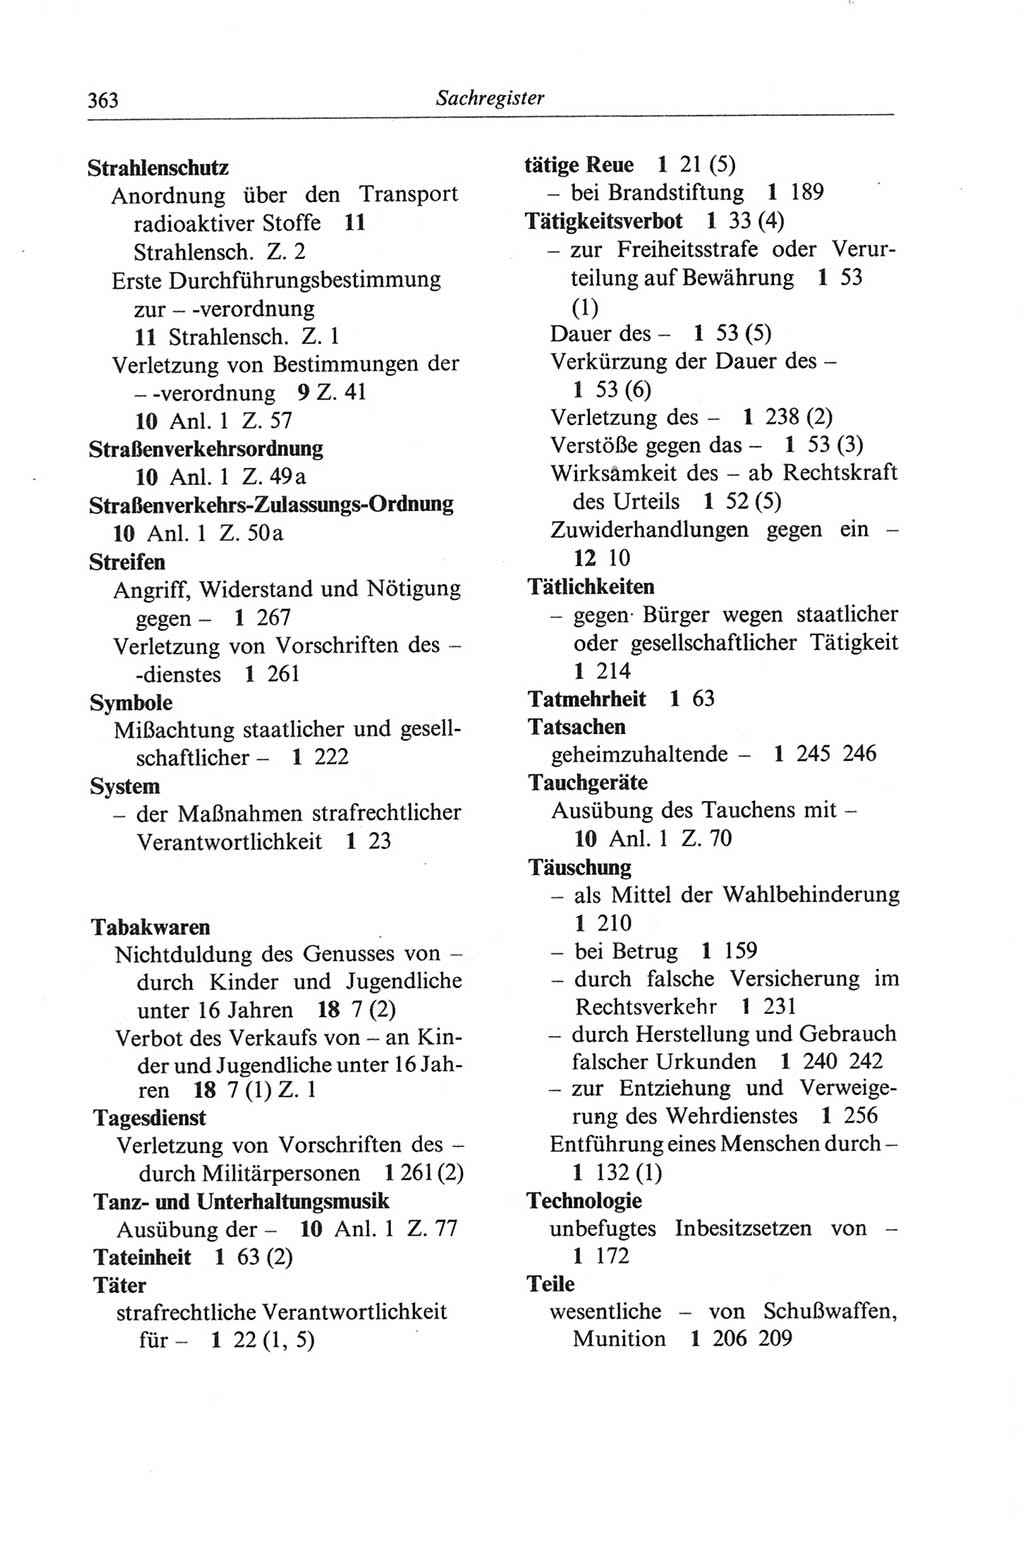 Strafgesetzbuch (StGB) der Deutschen Demokratischen Republik (DDR) und angrenzende Gesetze und Bestimmungen 1968, Seite 363 (StGB Ges. Best. DDR 1968, S. 363)